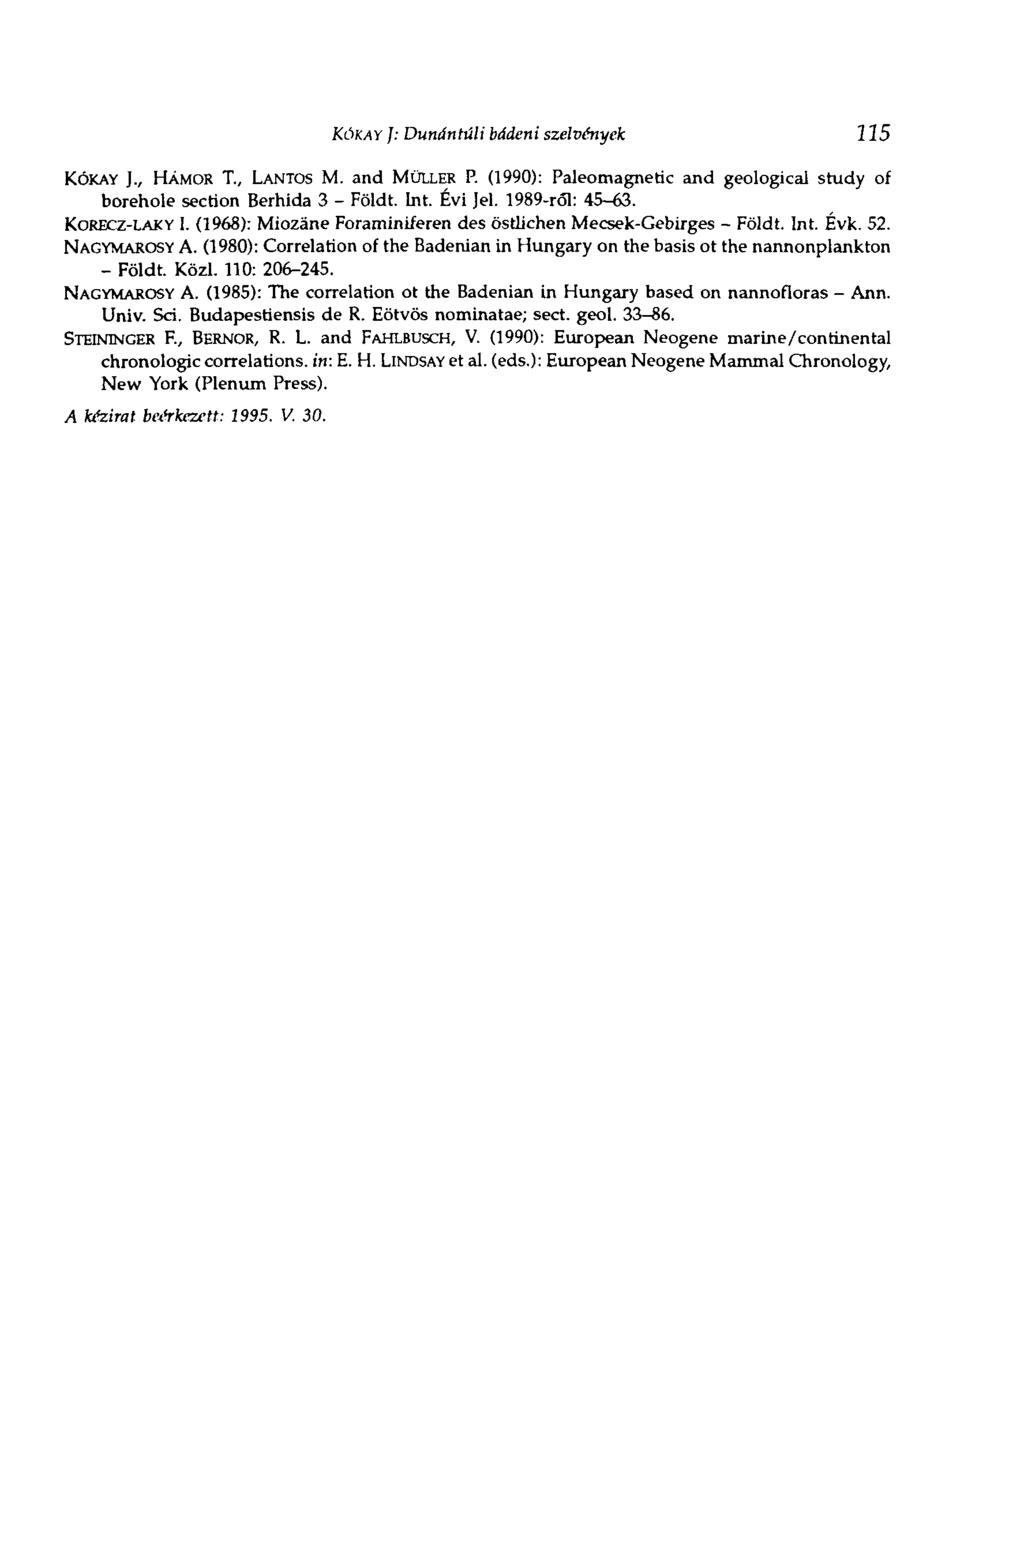 KÓKAY ]: Dunántúli bádeni szelvények 115 KÓKAY ]., HÁMOR T., LANTOS M. and MÜLLER P. (1990): Paleomagnetic and geological study of borehole section Berhida 3 - Földt. Int. Évi Jel. 1989-ról: 45-63.